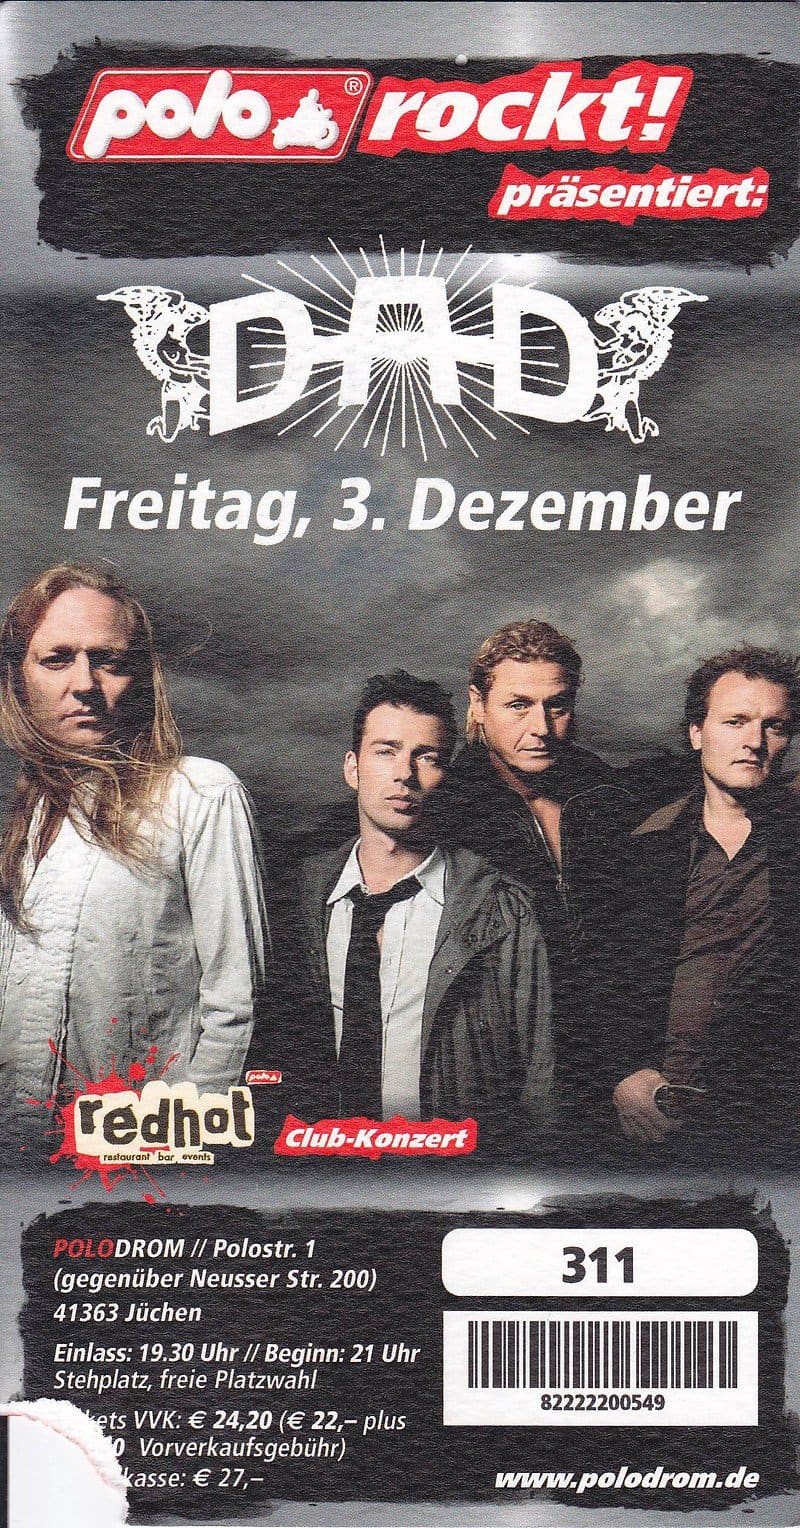 TICKET FOR RED HOT, JÜCHEN (DE), DECEMBER 3, 2010